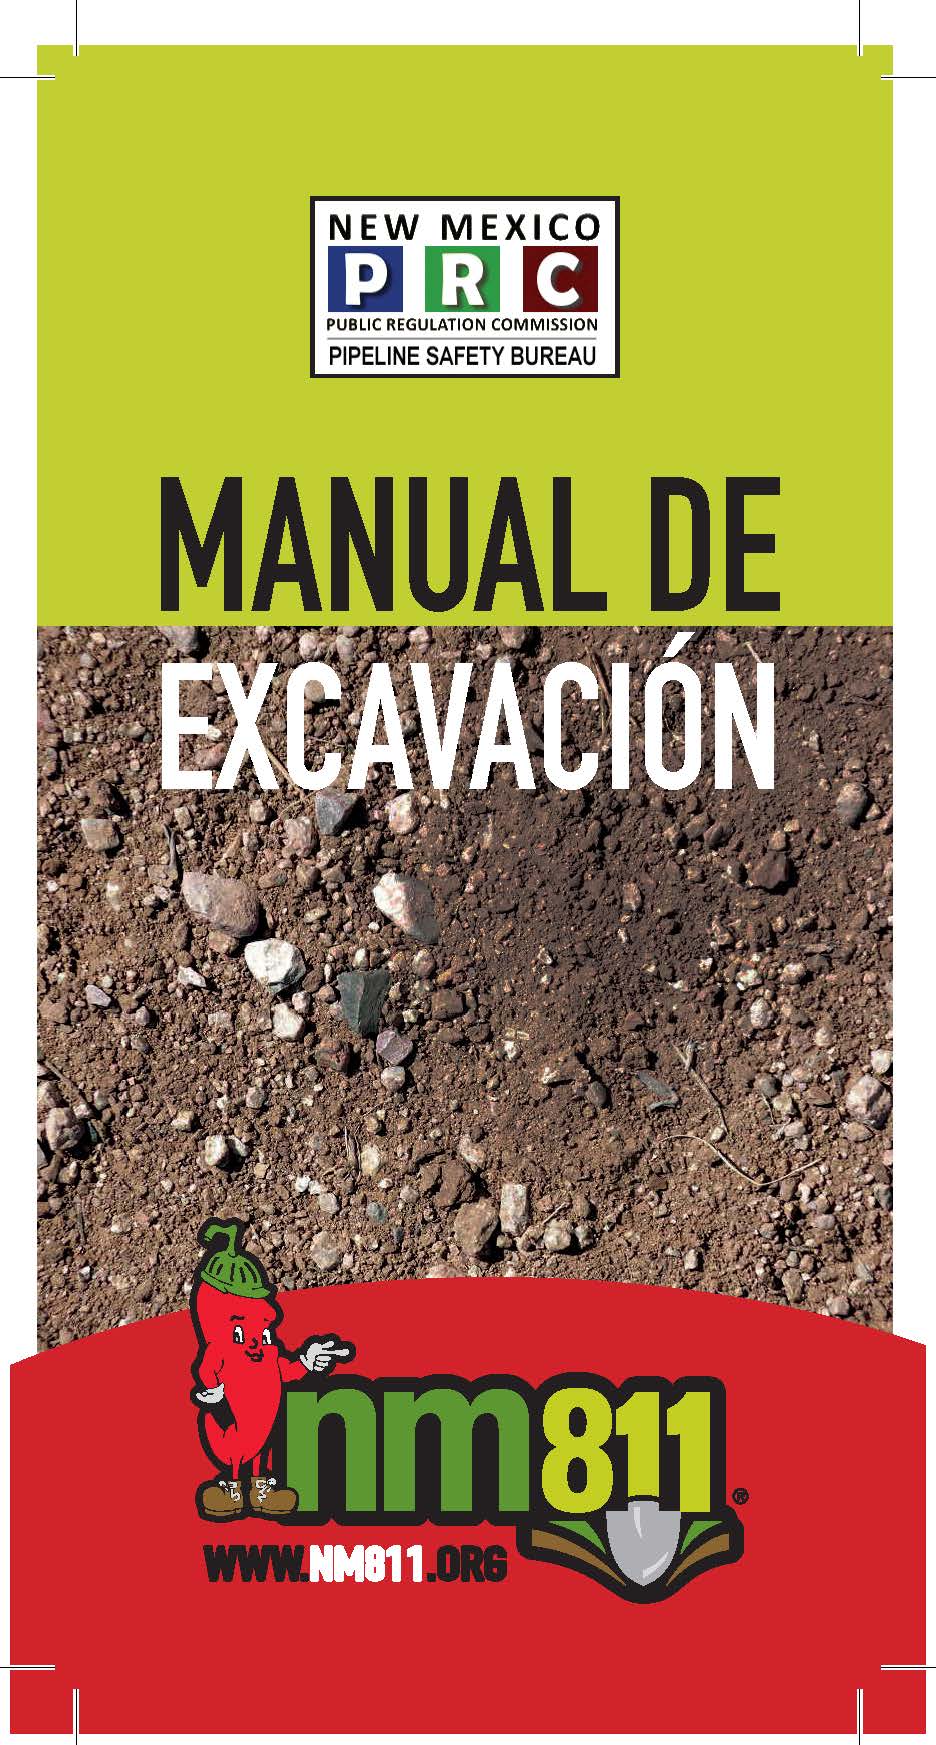 Cover of Spanish handbook